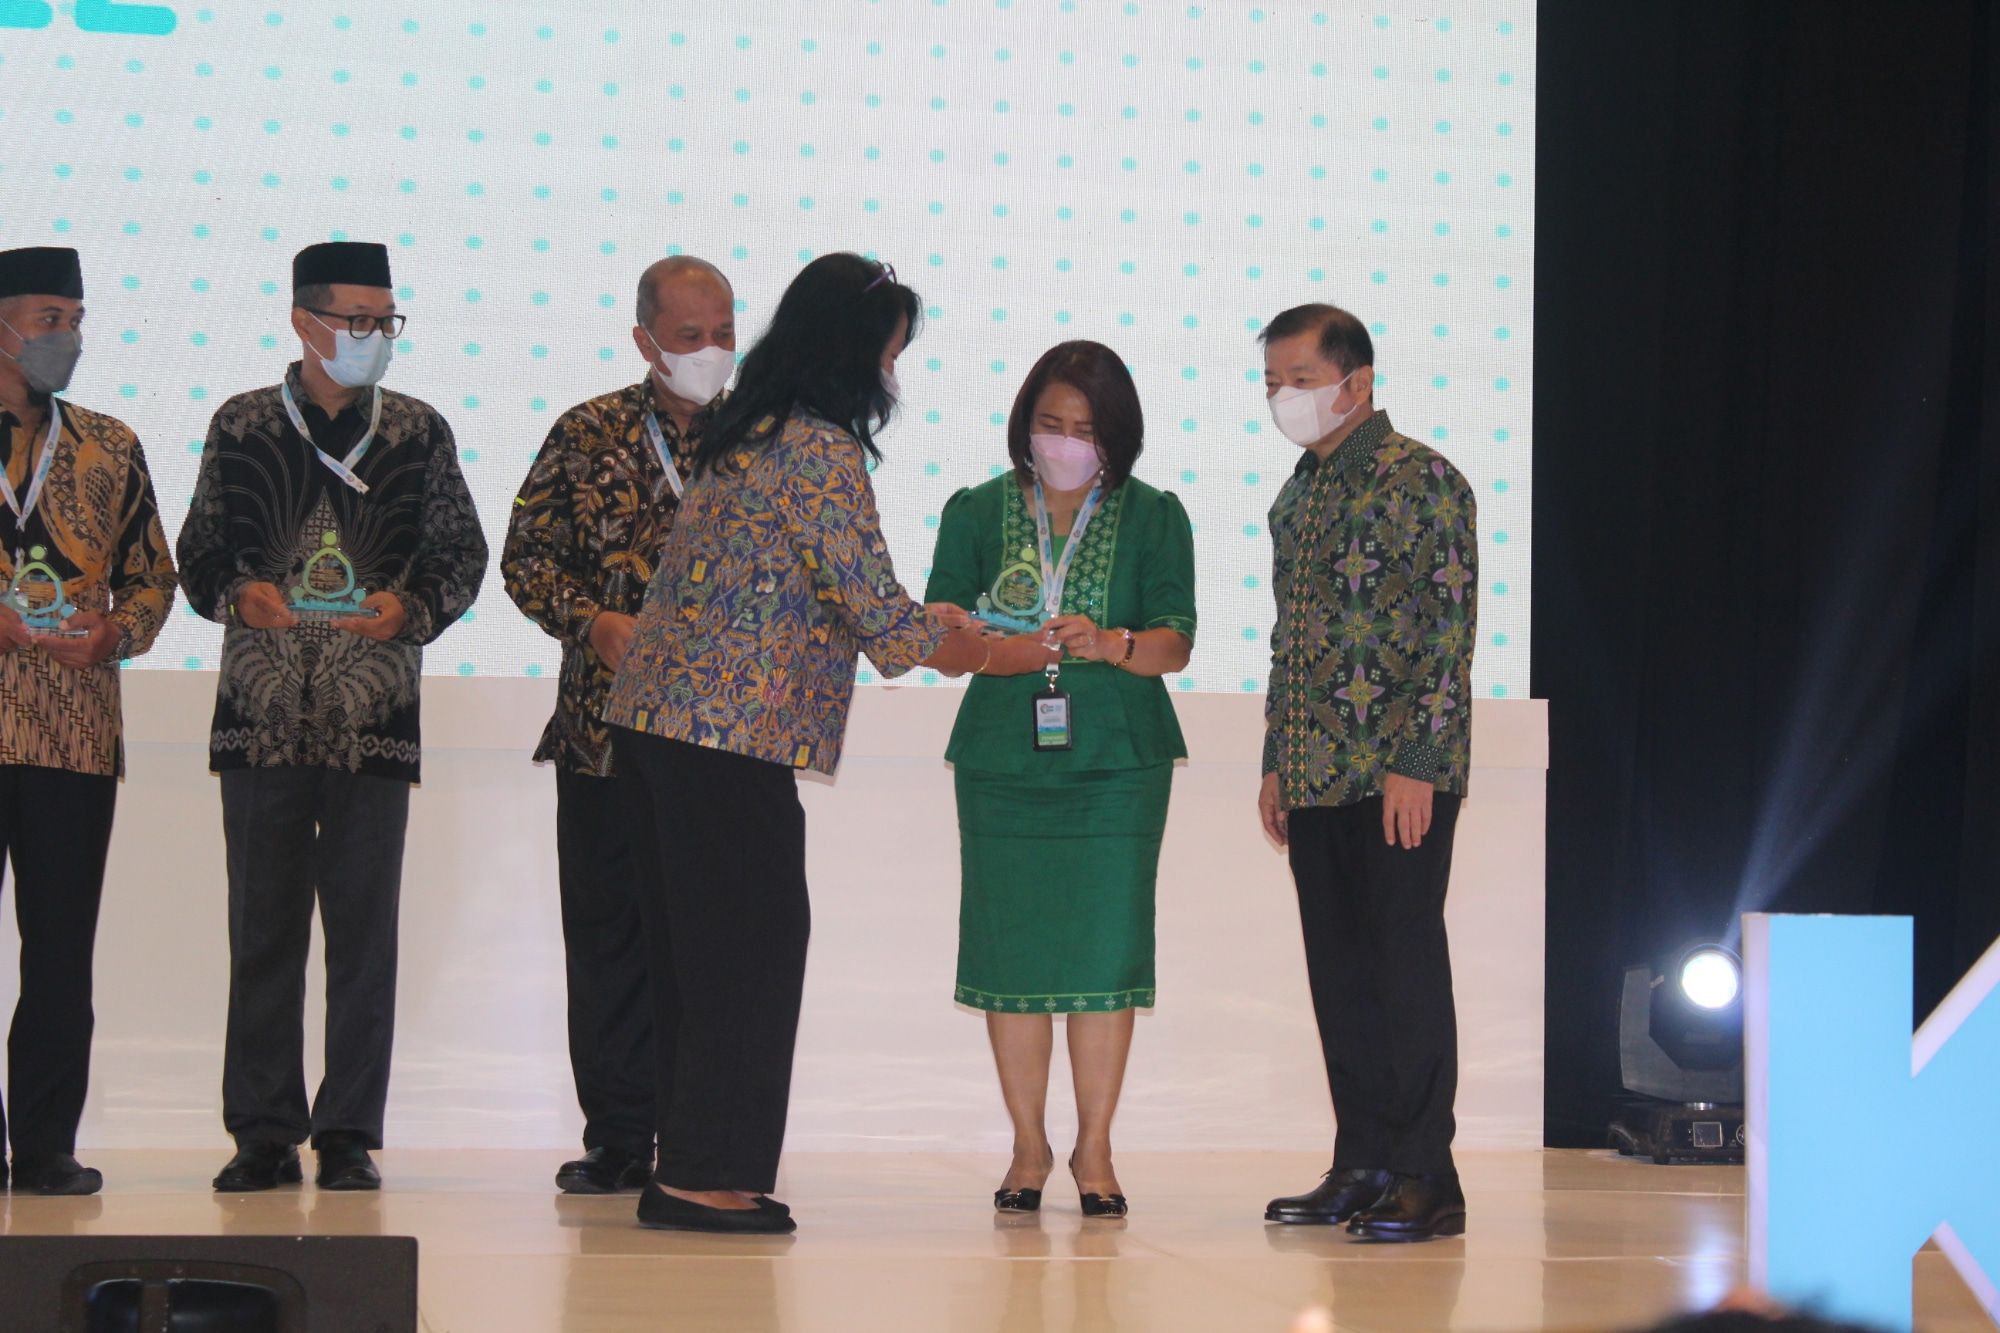 Ketua TP Kabupaten Manggarai menerima penghargaan dengan kategori  "Inovasi Kepemimpinan Perempuan Dalam Pembangunan Sanitasi Yang Kesetaraan Gender dan Inklusi".